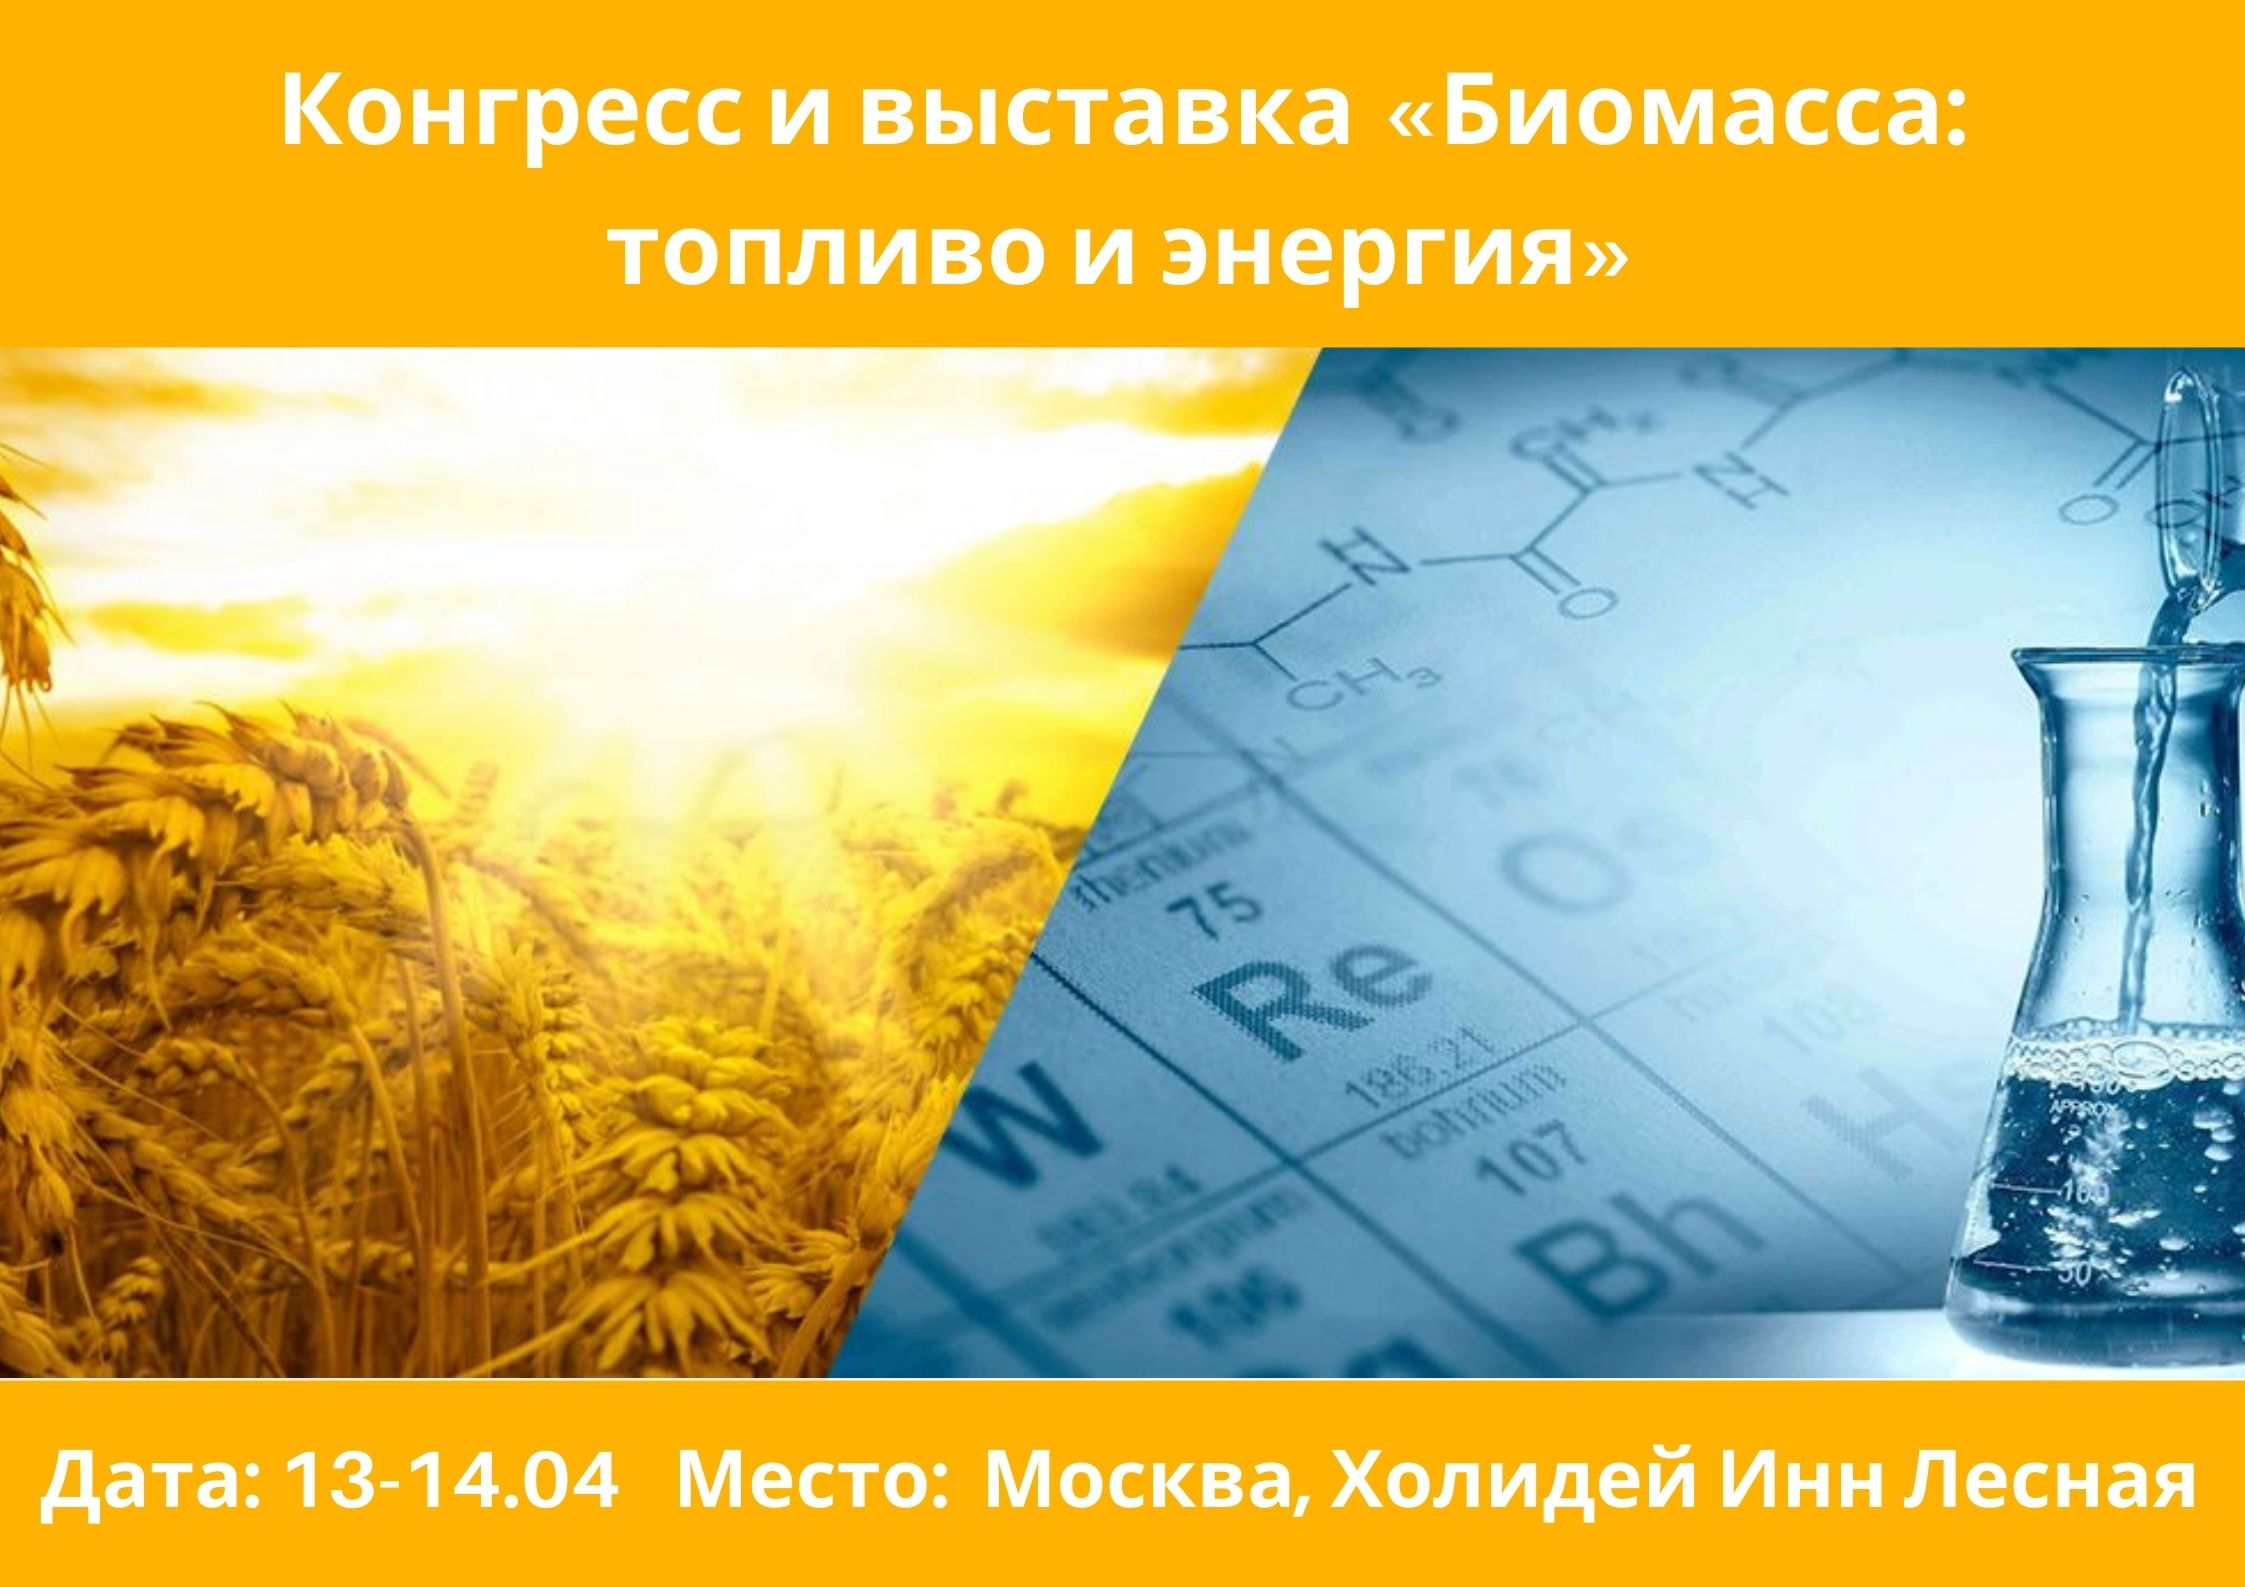 Международный конгресс и выставка «Биомасса: топливо и энергия»